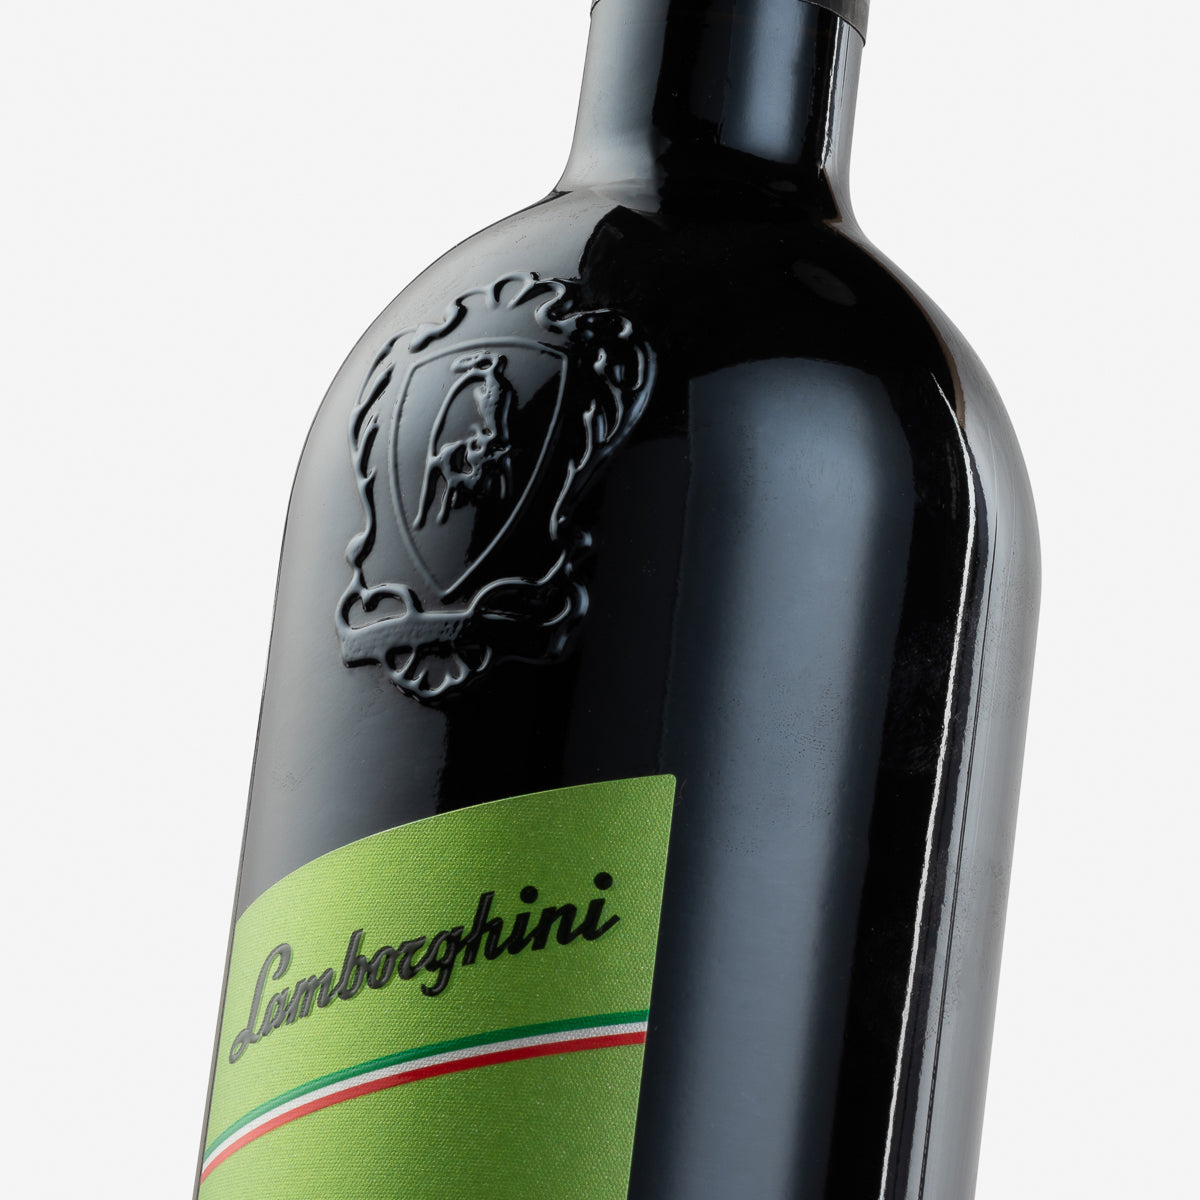 Lamborghini: '68 Italia with Gift Box & Corkscrew – Wine by Lamborghini